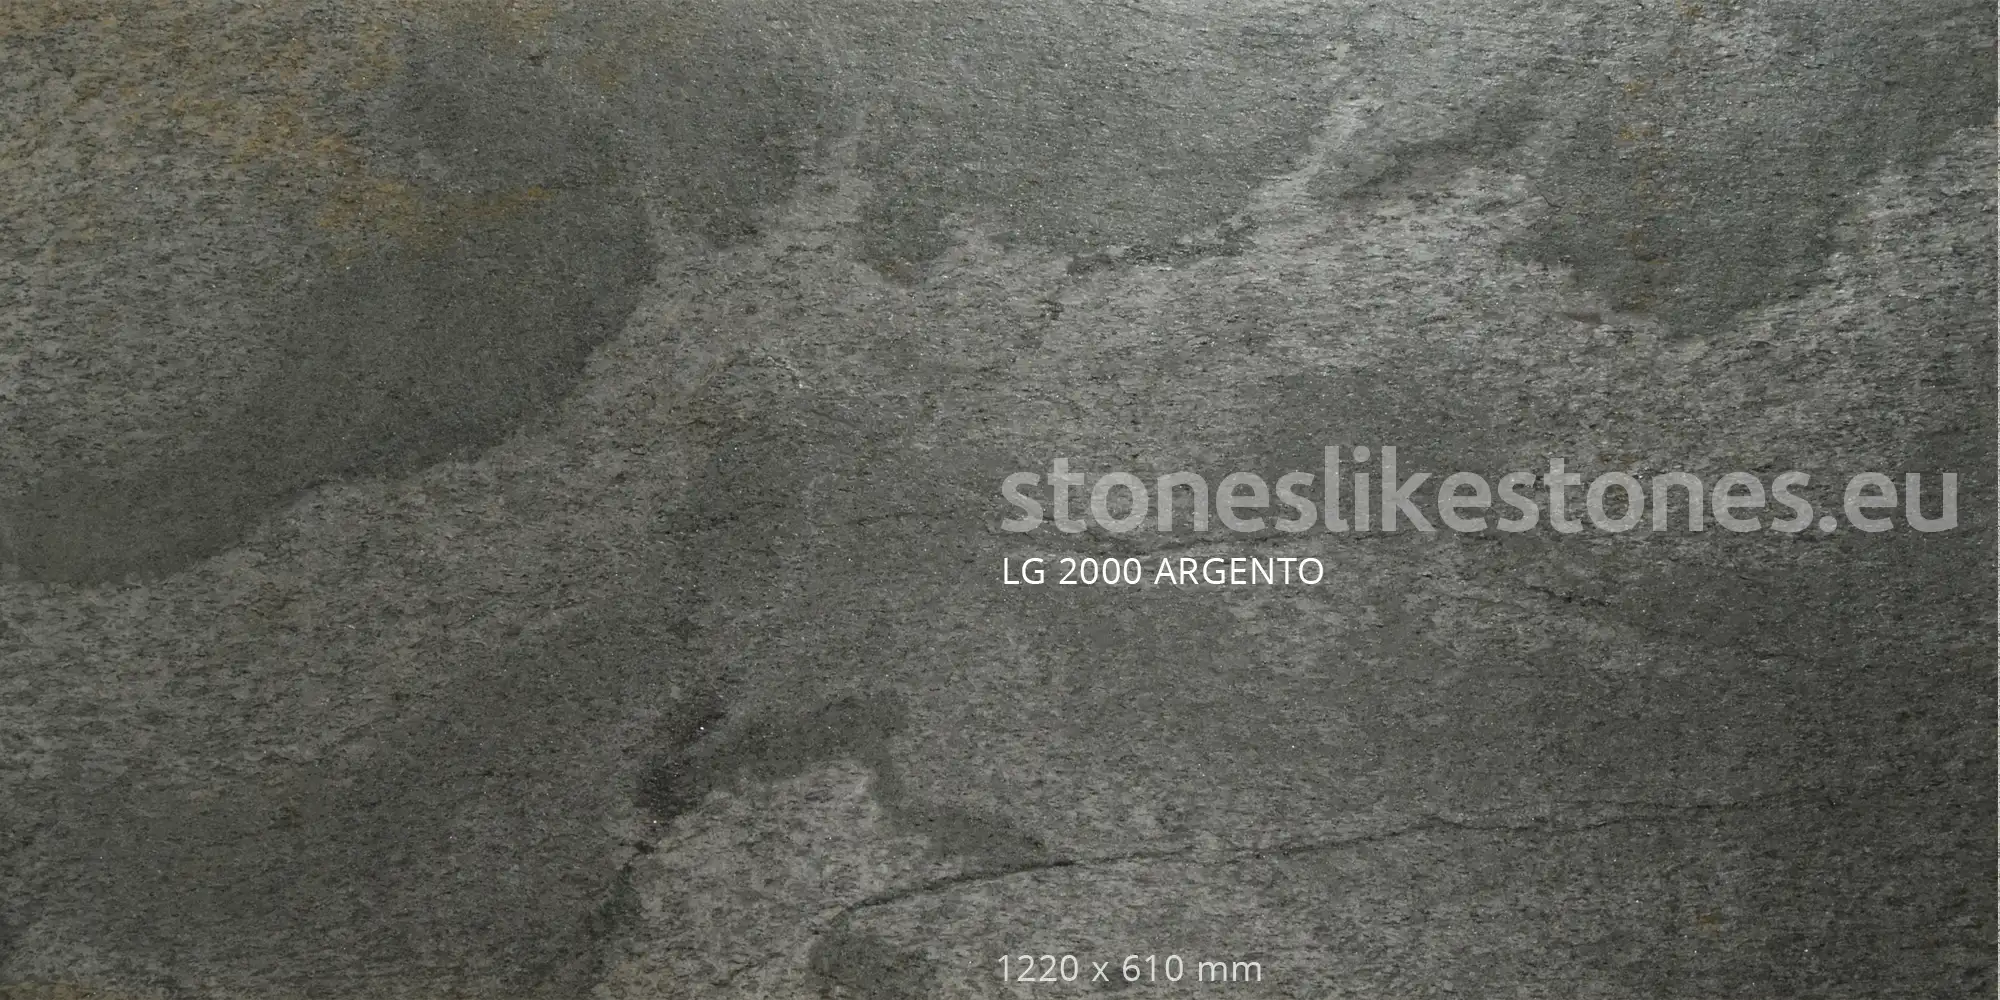 StoneslikeStones Dünnschiefer LG 2000 ARGENTO Glimmerschiefer – Download mit Rechtsklick